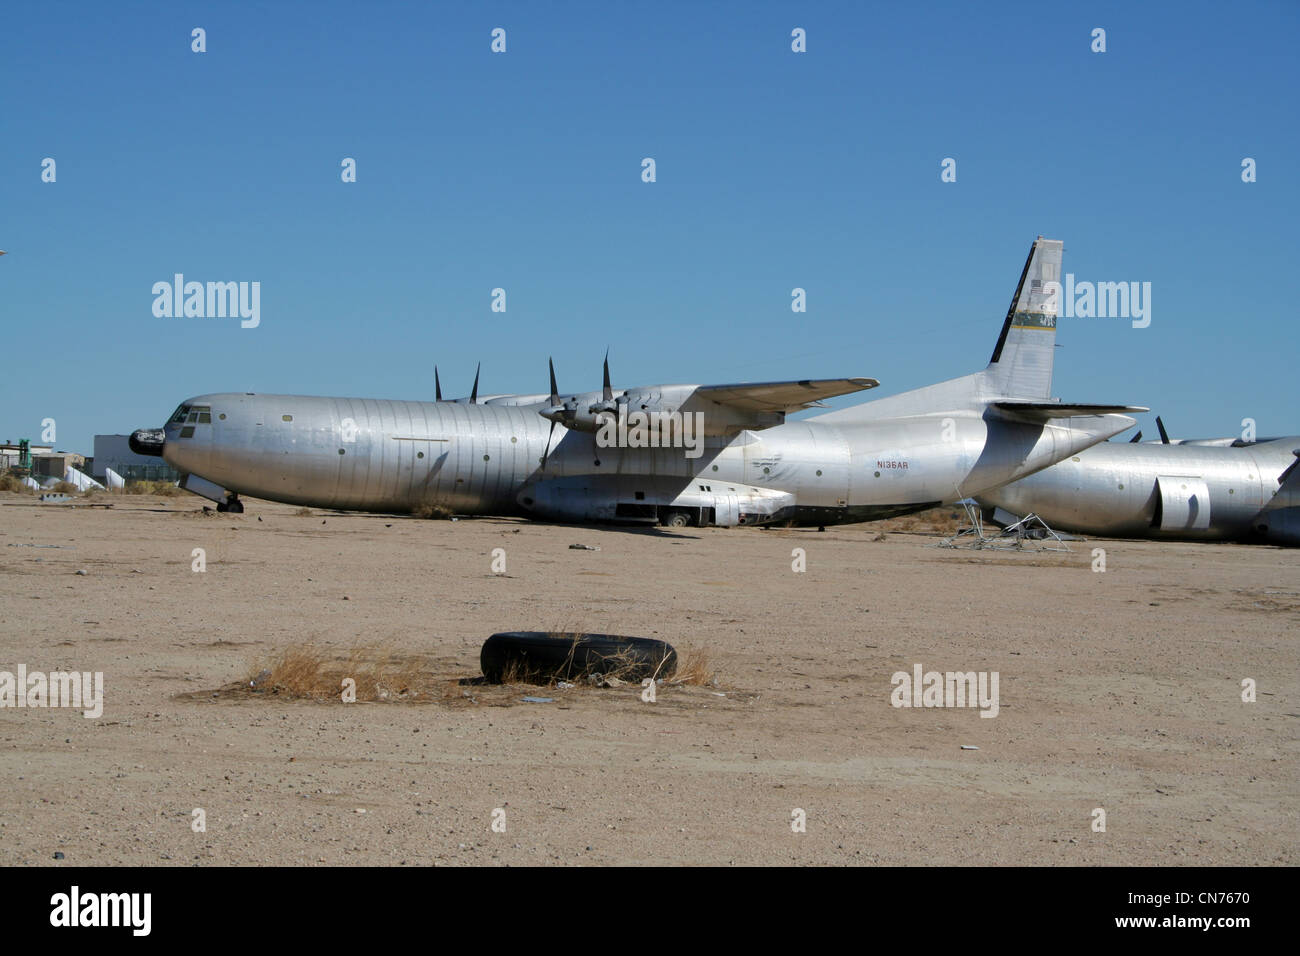 Ancien douglas usaf c-133 cargomaster dans le désert à l'aérodrome de Mojave, Californie, USA Banque D'Images